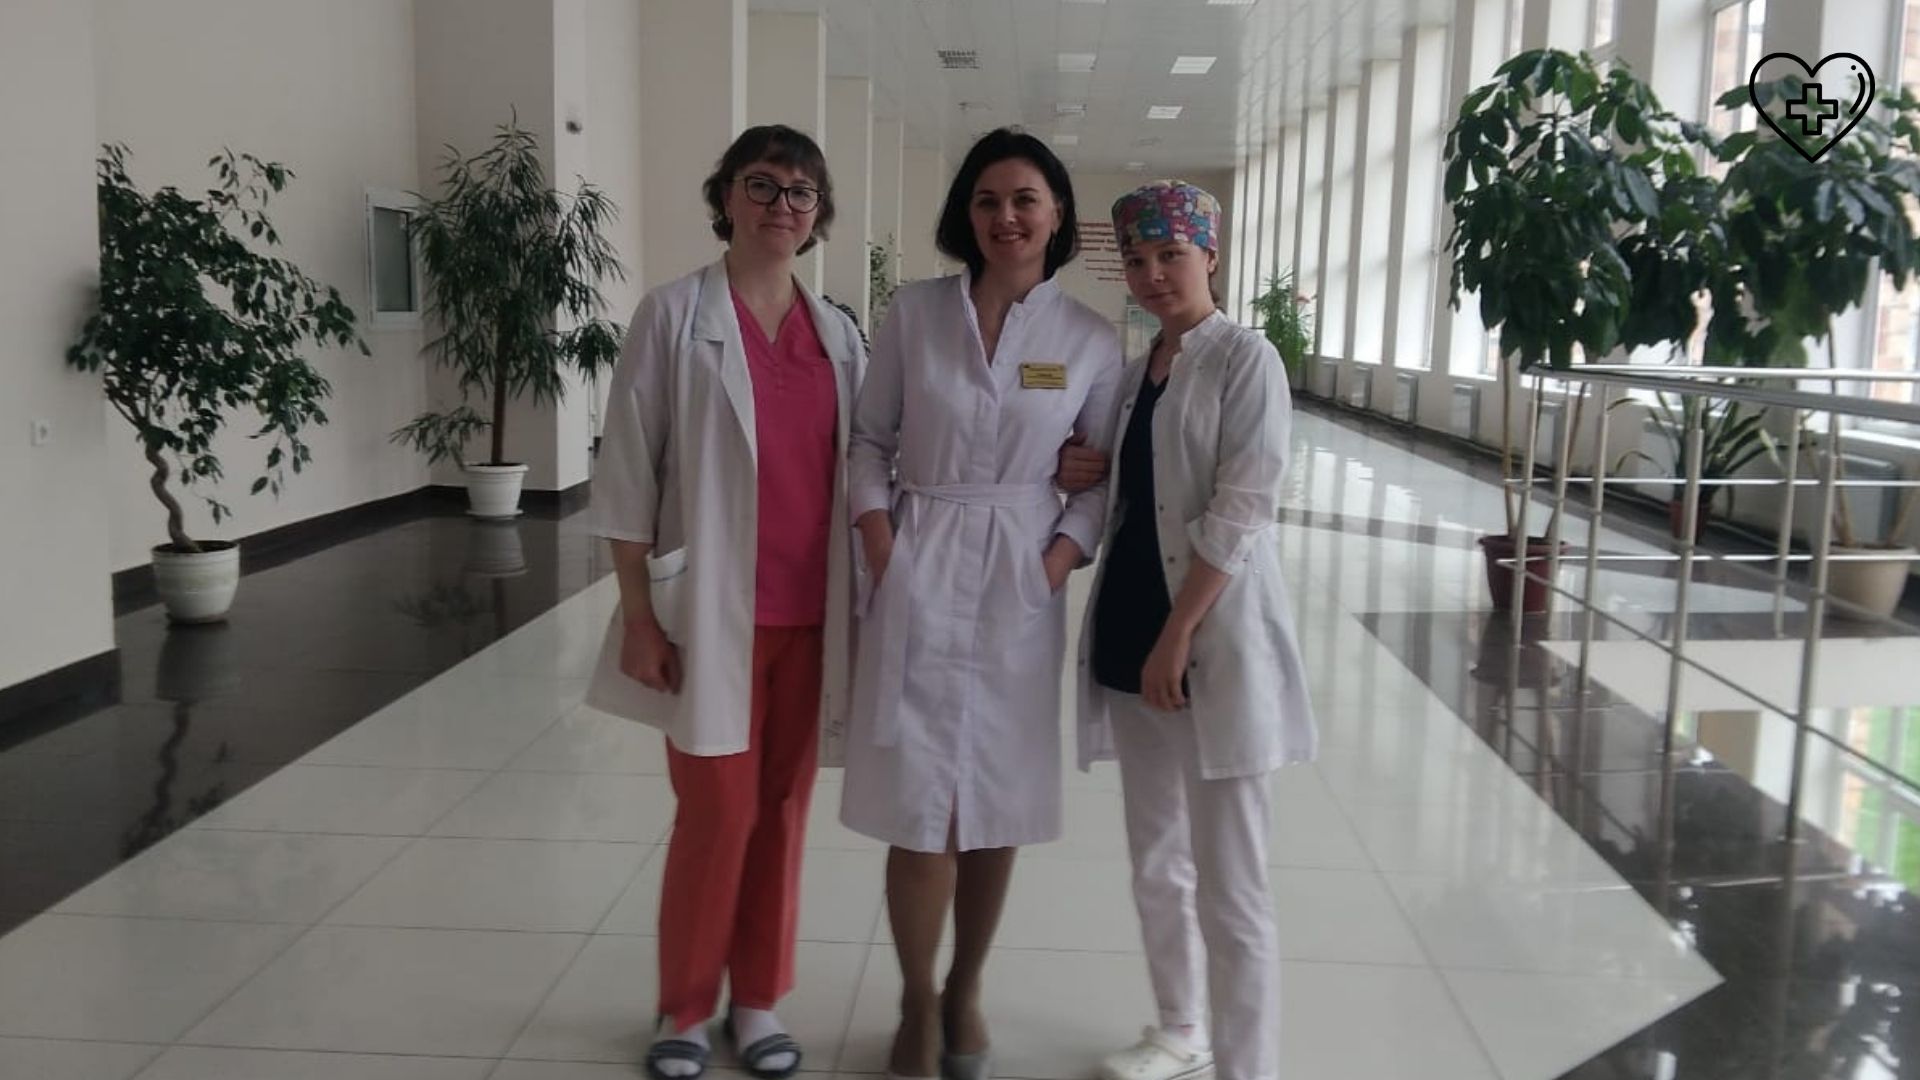 Лучших медицинских сестер наградили  в областной клинической больнице им. Н. А. Семашко